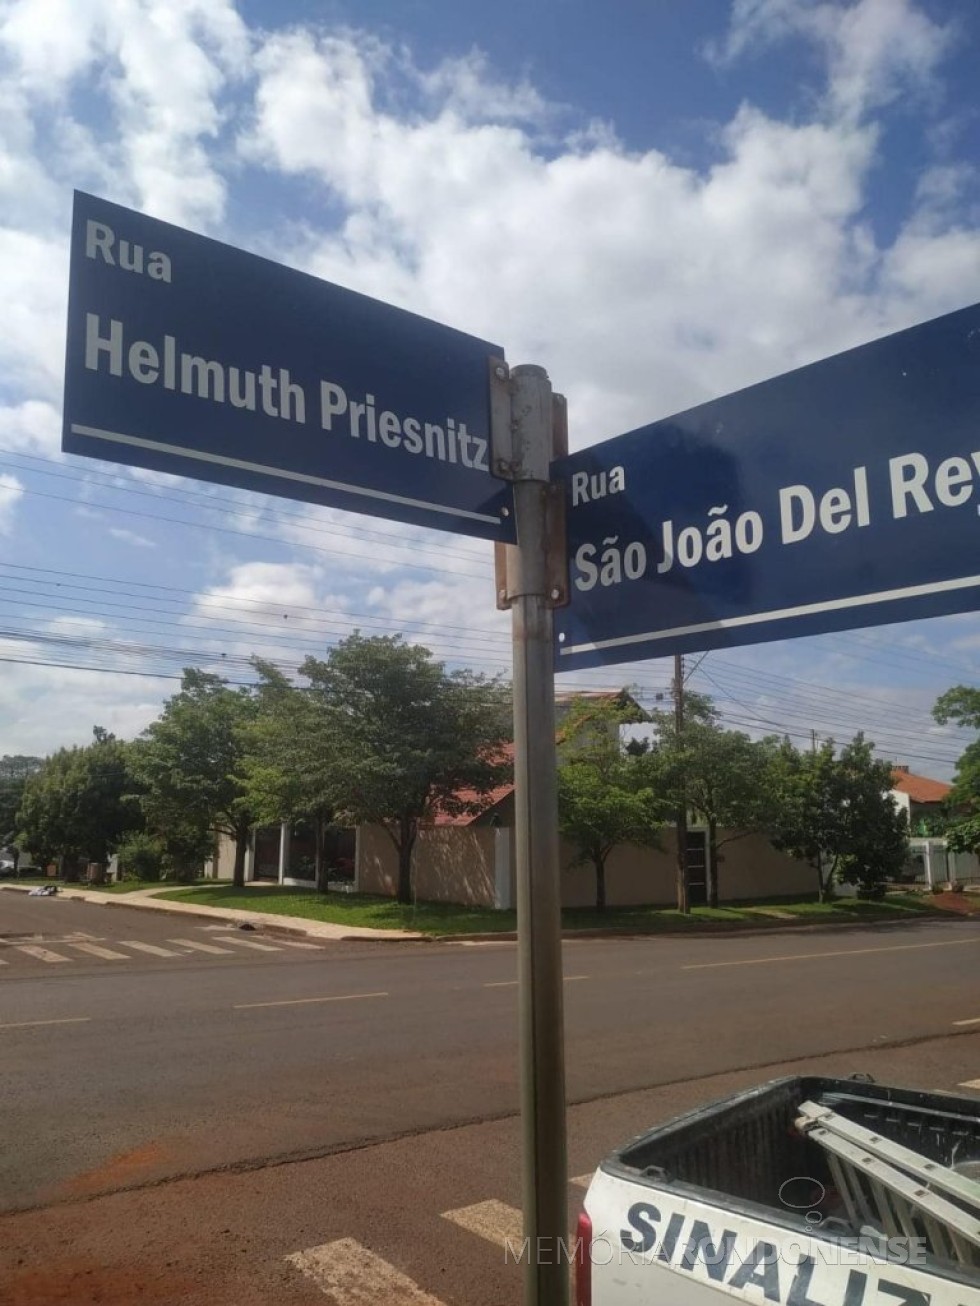 || Placa indicativa da rua em homenagem ao pioneiro Helmuth Priesnitz, na cidade de Marechal Cândido Rondon. 
Imagem: Acervo e crédito Cleiton Freitag - FOTO 24 - 